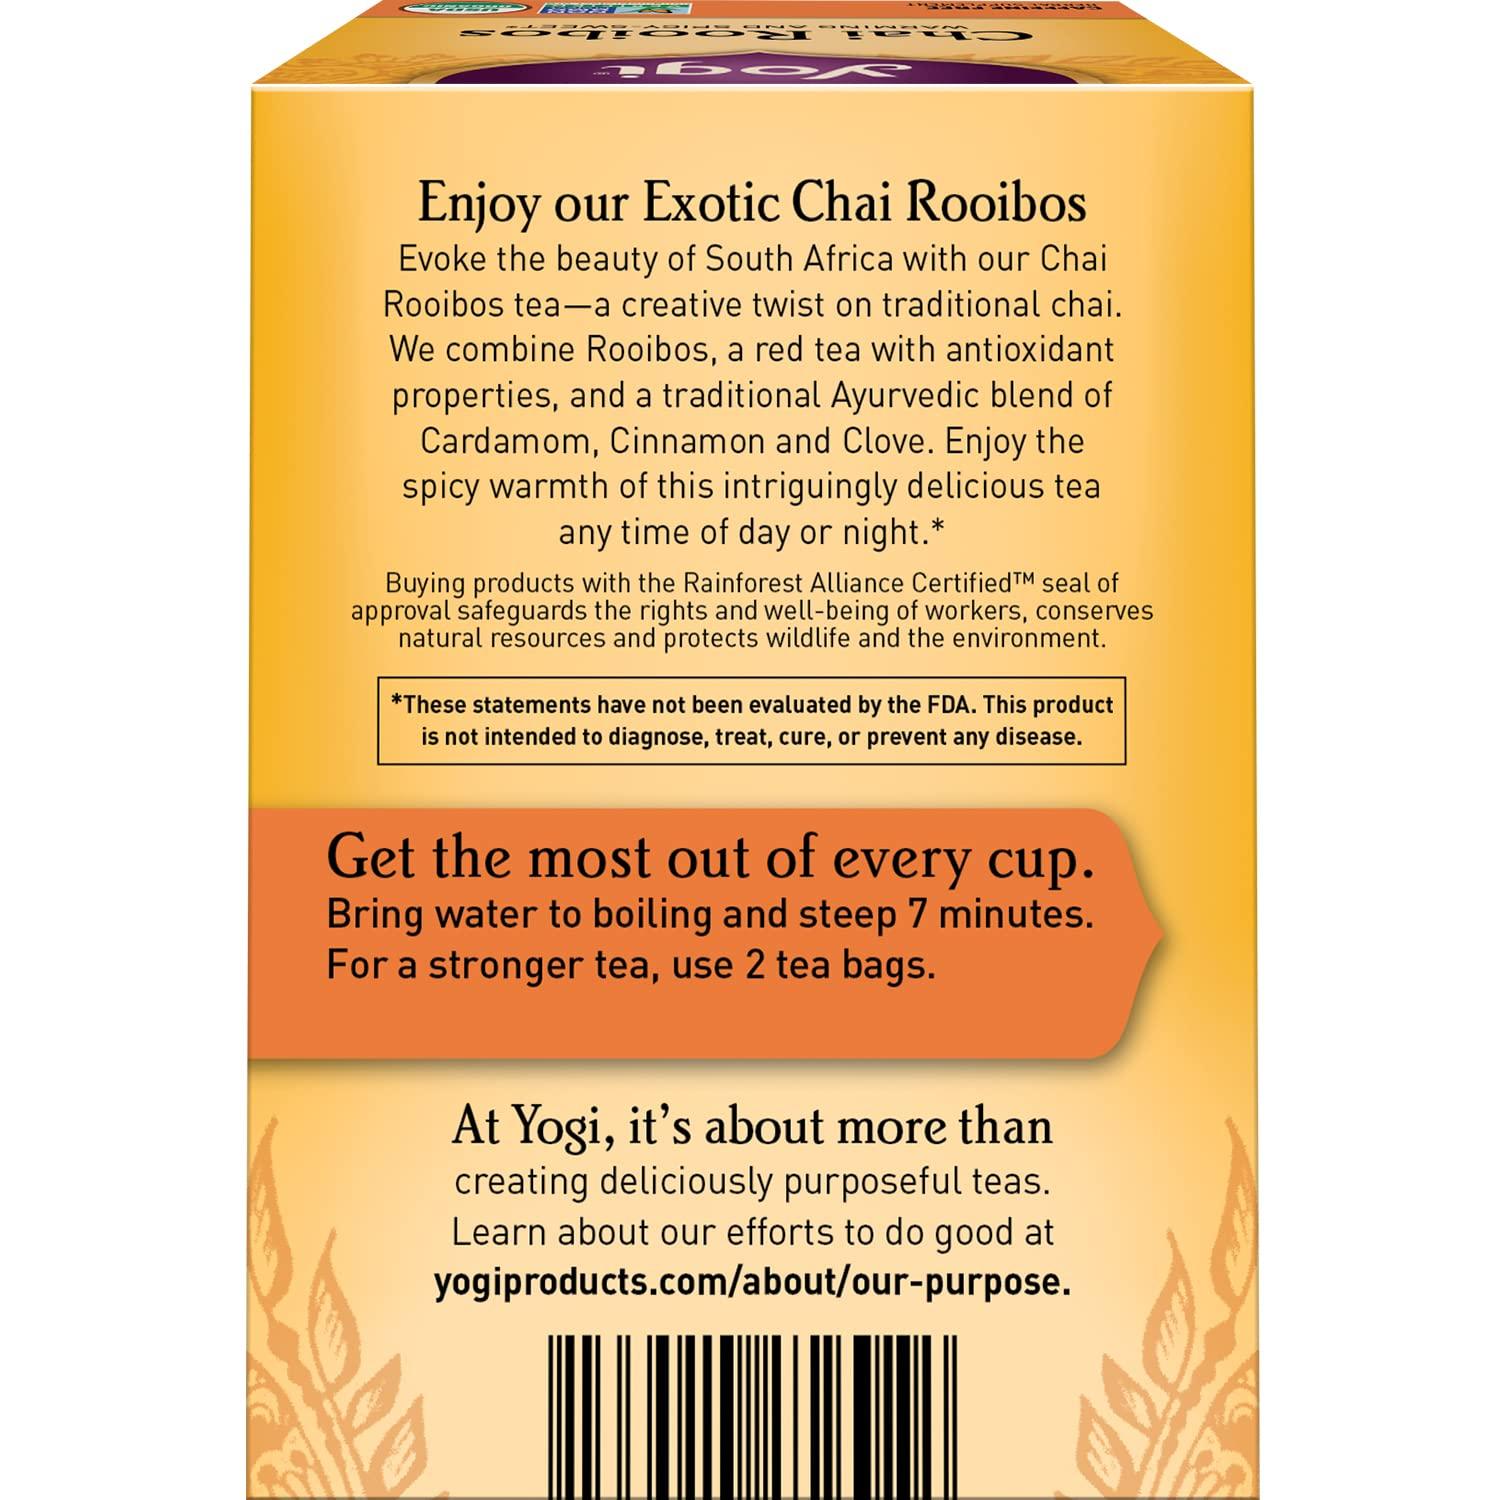 Yogi Tea DeTox, Caffeine-Free Organic Herbal Tea Bags, 4 Boxes of 16